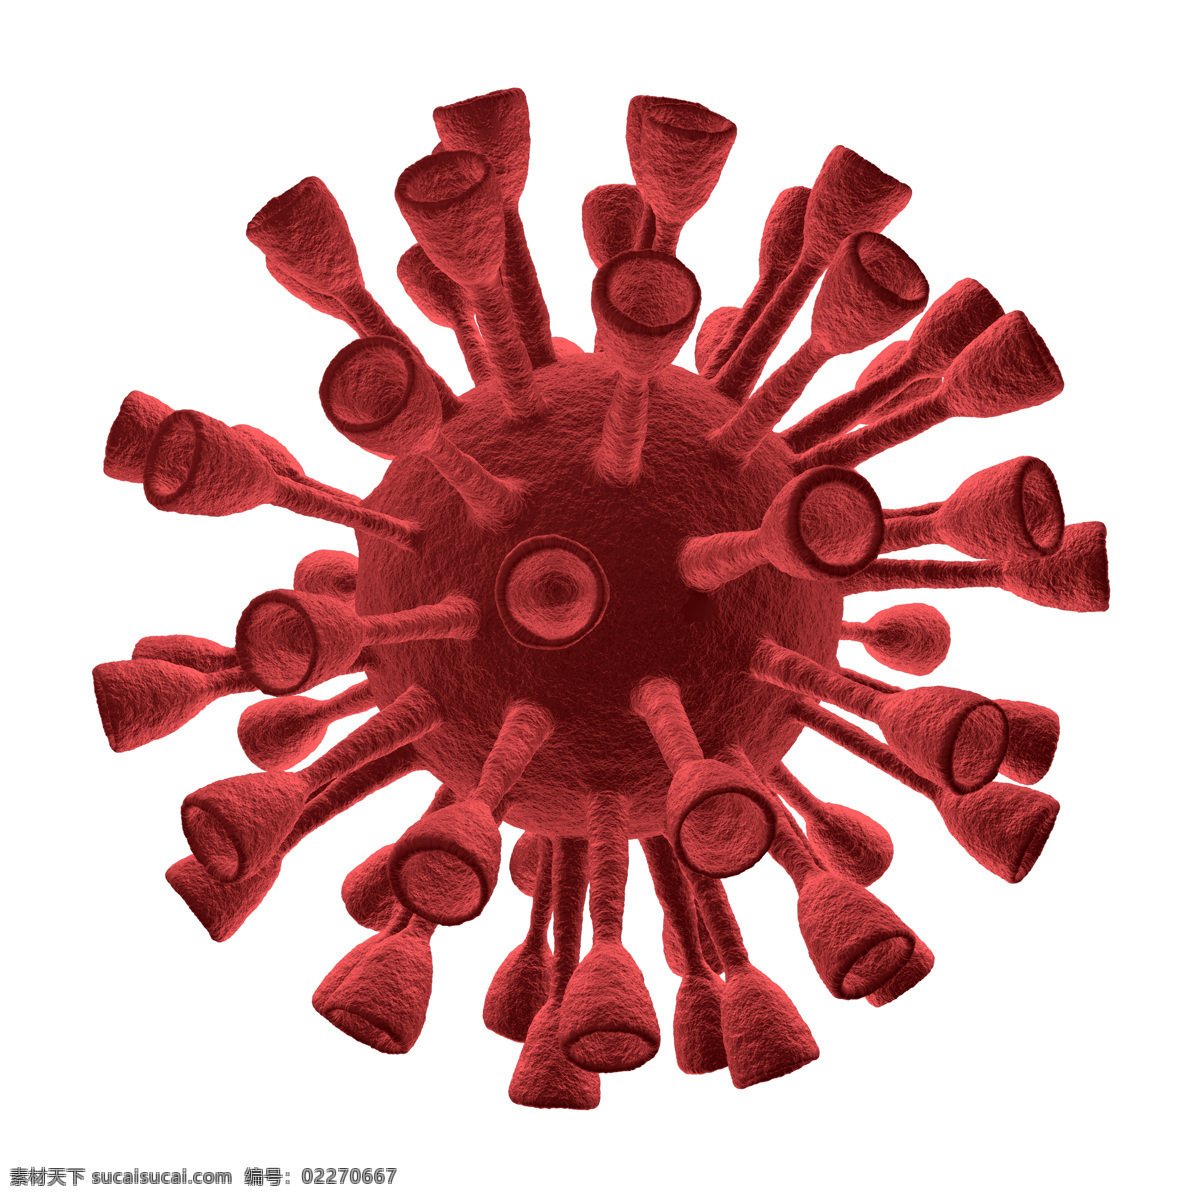 红色 带刺 病毒 红色带刺病毒 病毒体 体内病毒 病毒细胞 病毒素材 医学 医疗 科学研究 医疗科技 医疗护理 现代科技